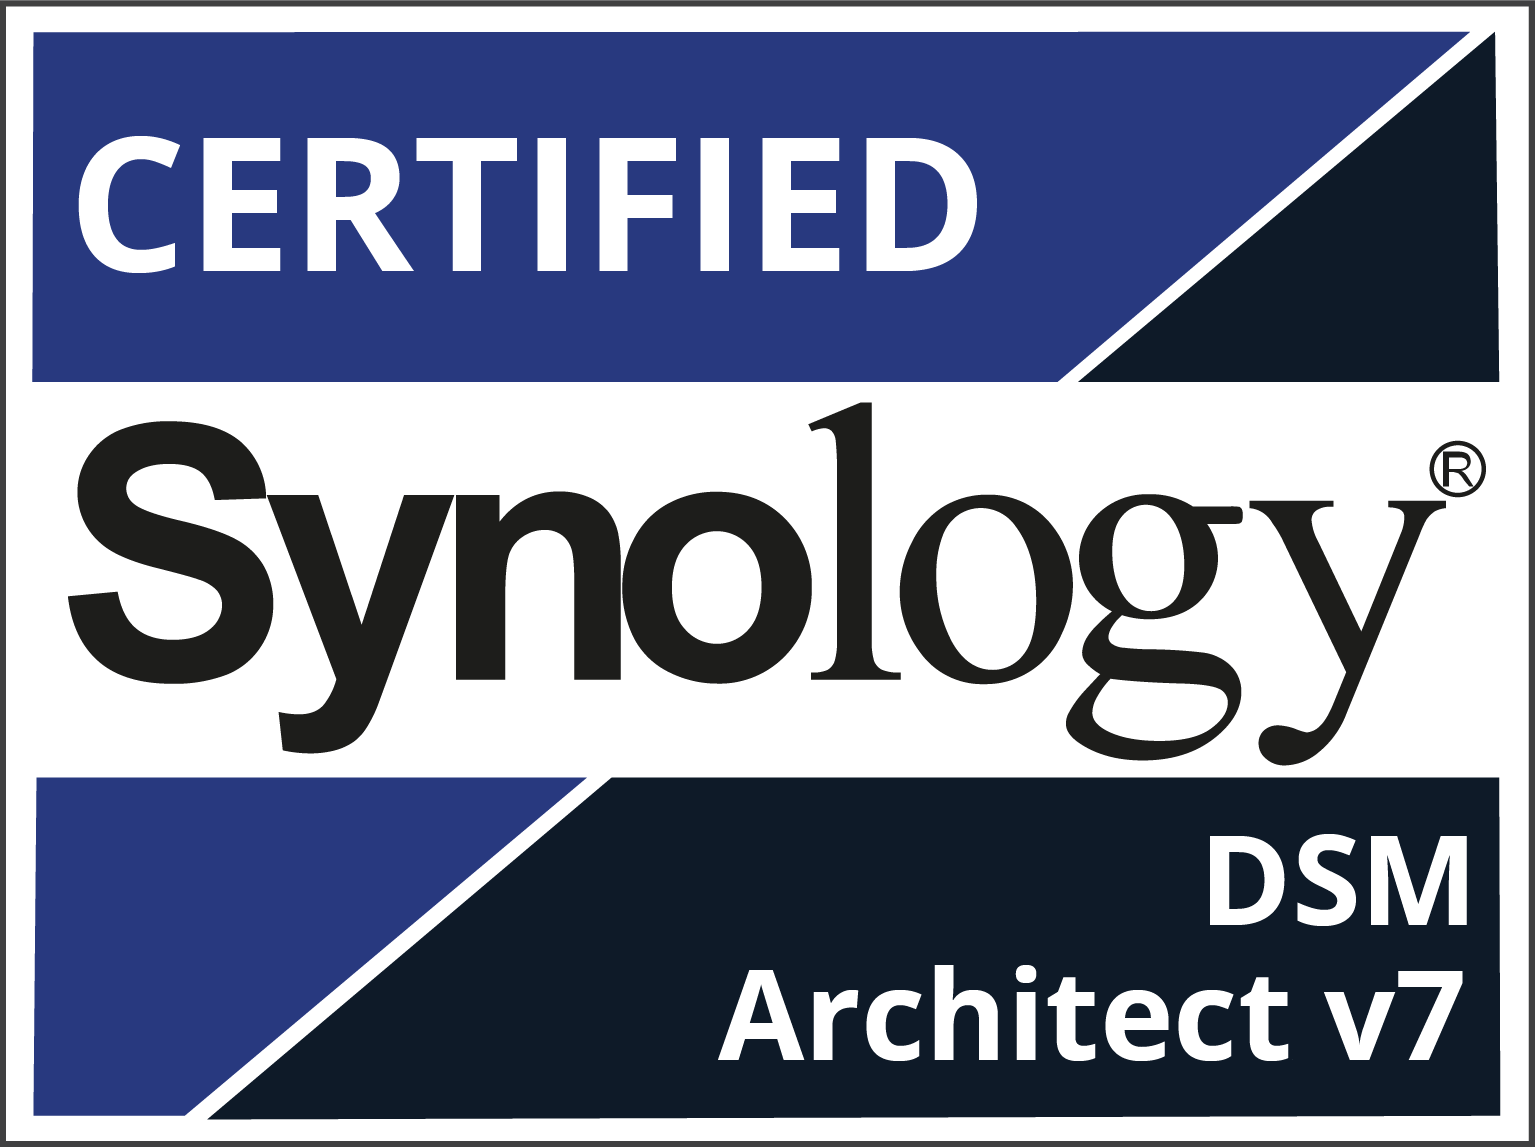 Certified Synology DSM Architect v7